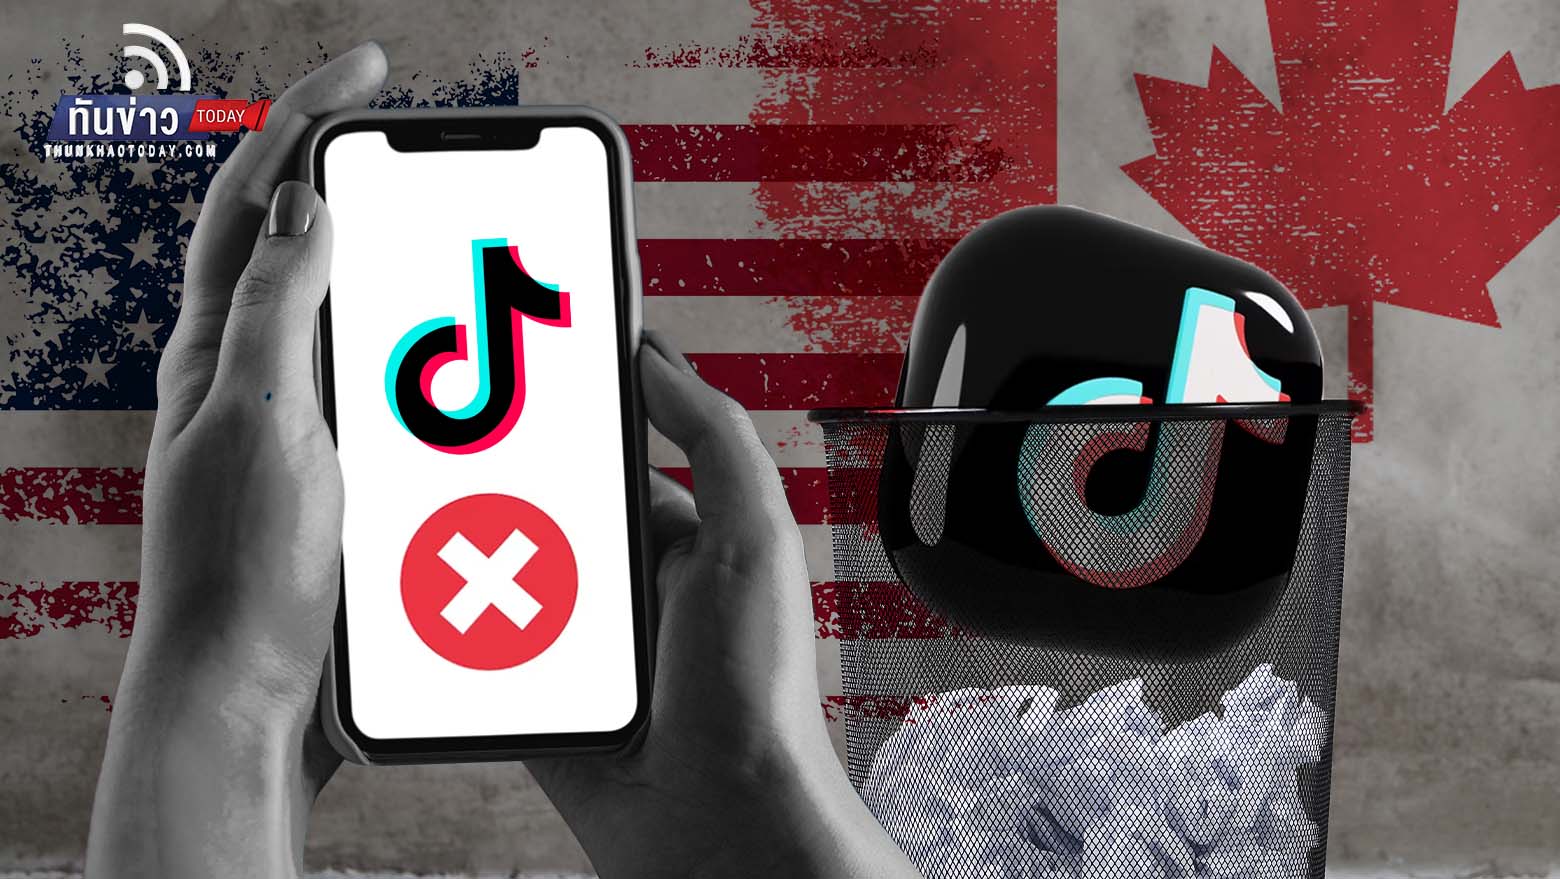 สหรัฐฯ - แคนาดา สั่งลบแอป Tik Tok ออกจากอุปกรณ์สื่อสารรัฐ อ้างภัยความมั่นคง